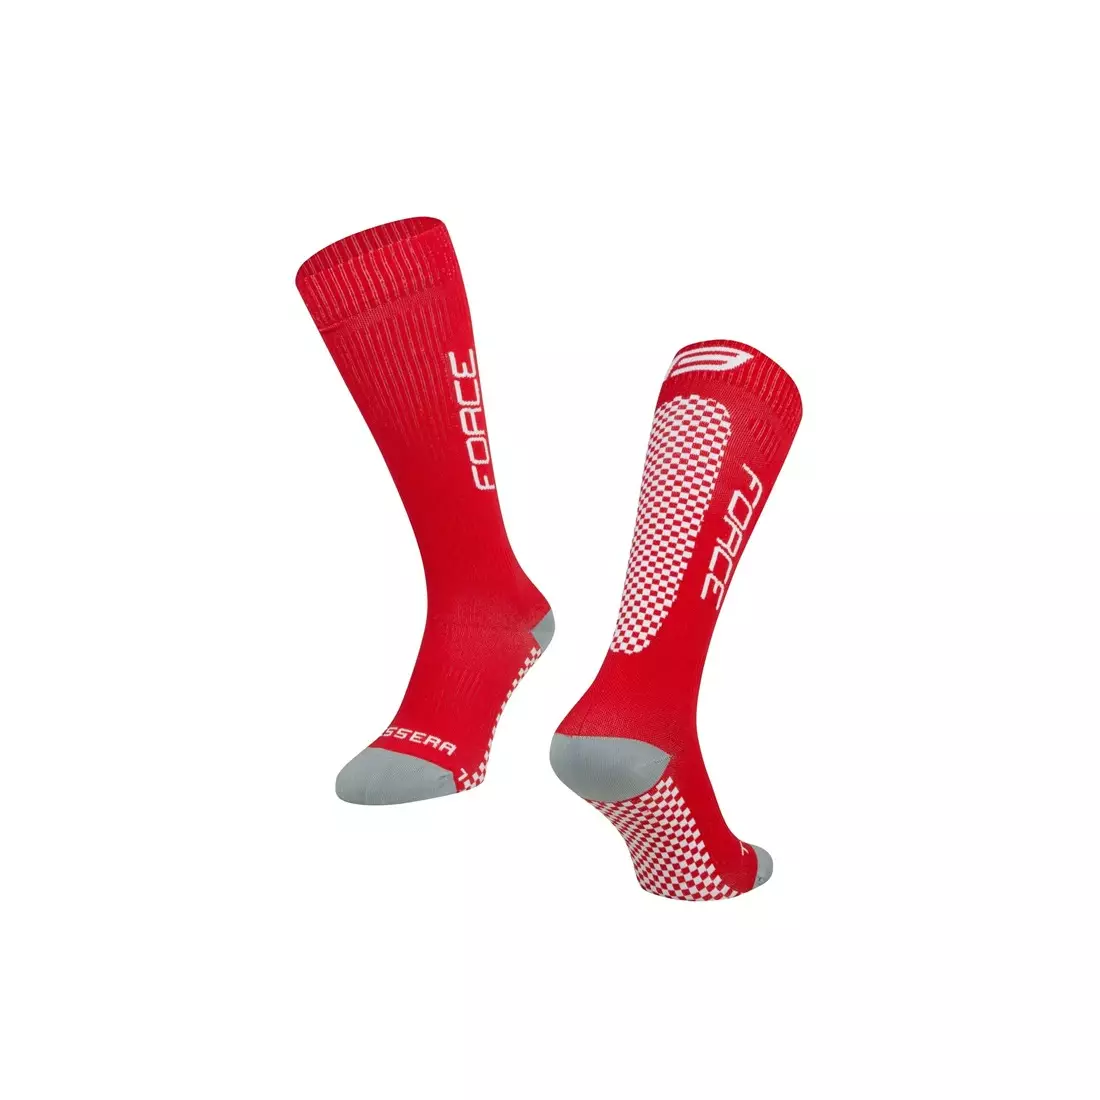 FORCE TESSERA COMPRESSION kompresní ponožky, Červené